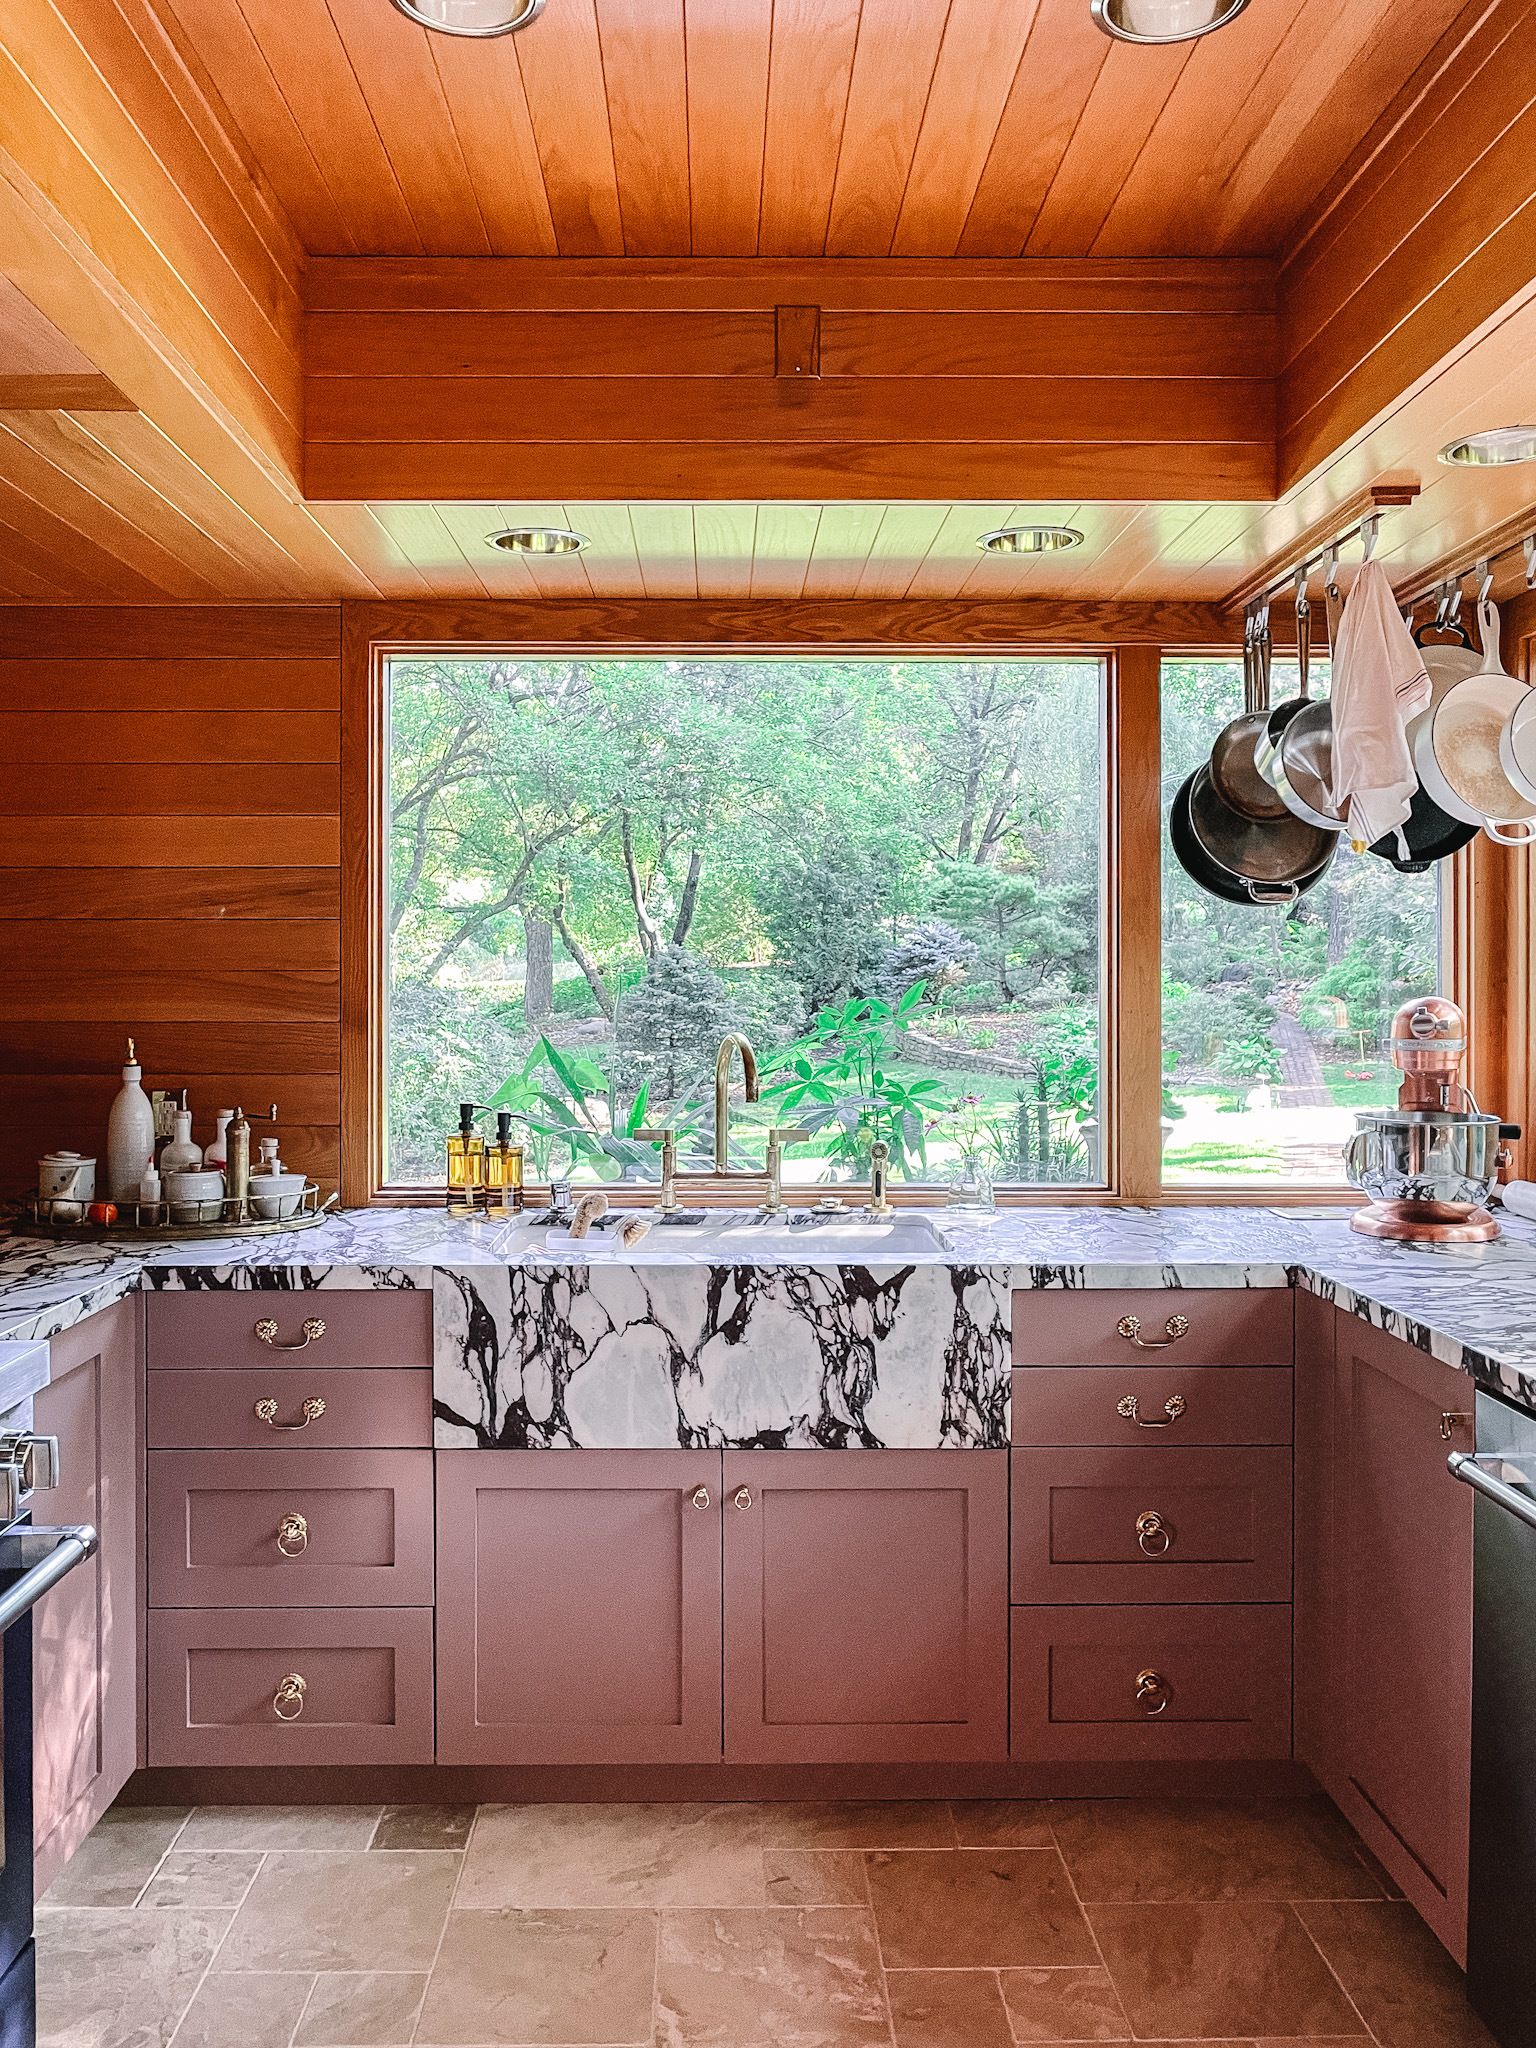 Got My Kitchen Reviewed by an Interior Designer, Got Design Tips